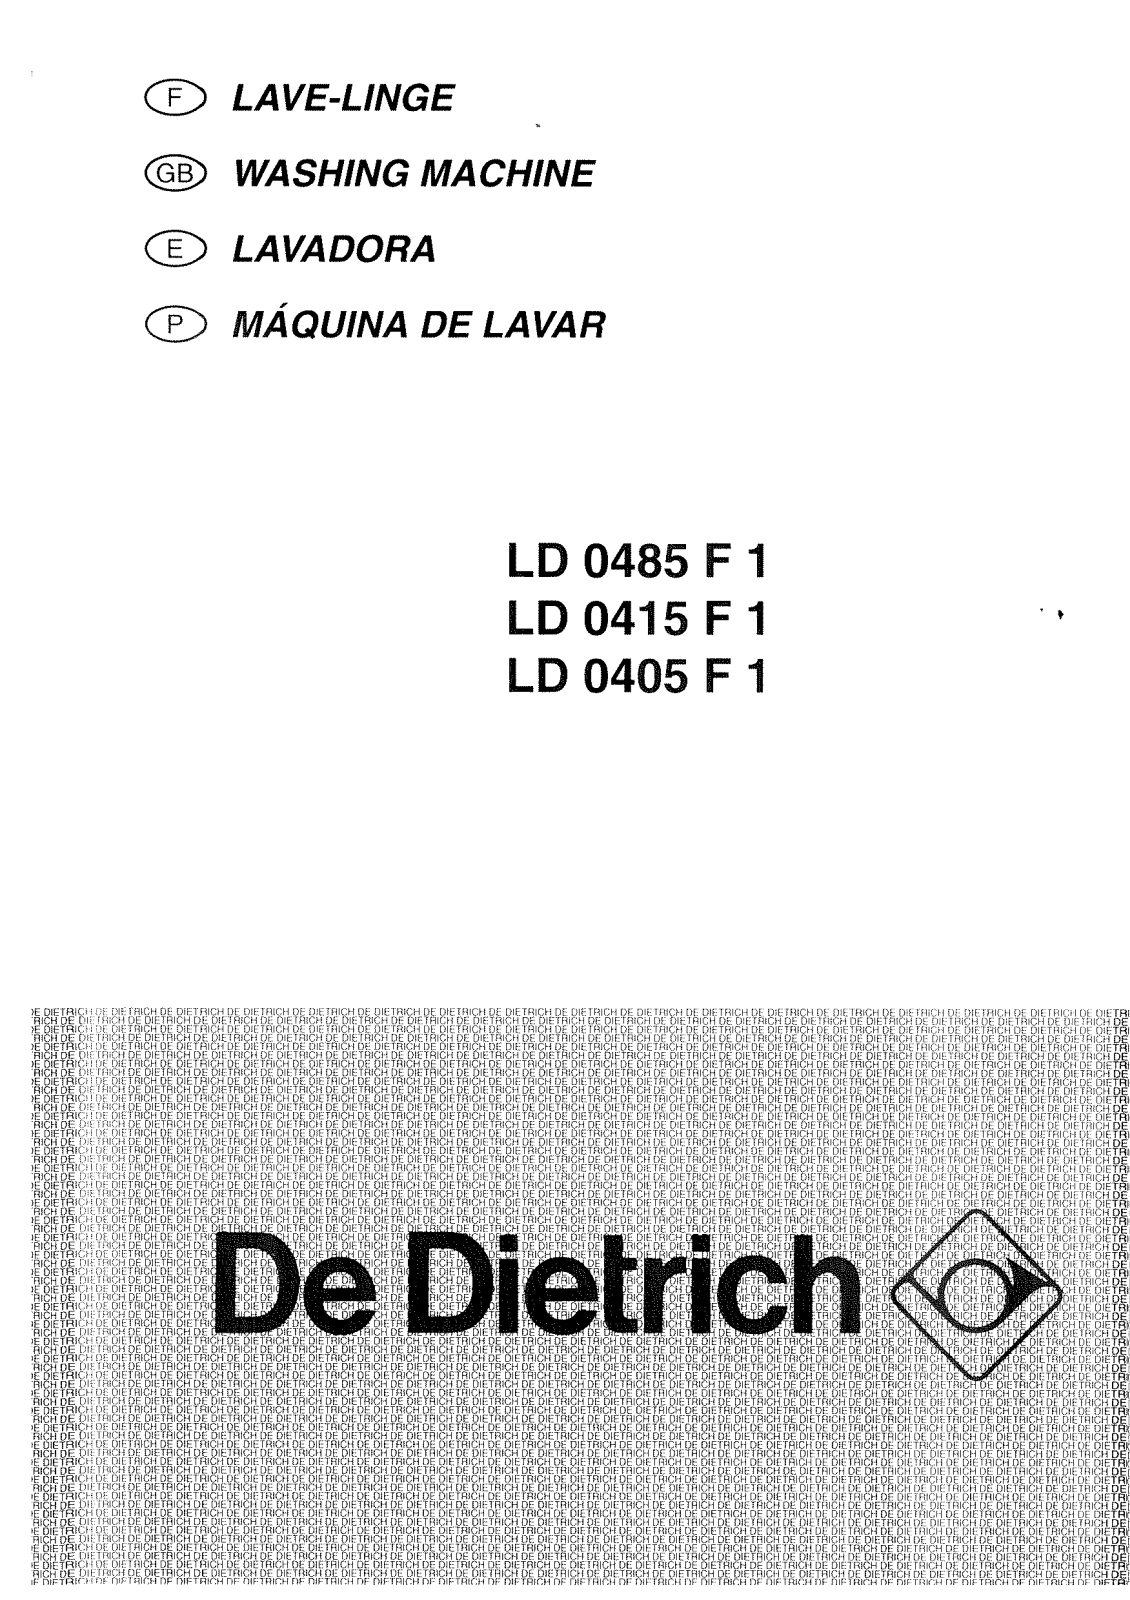 De dietrich LD0415F1, LD0485F1, LD0405F1 User Manual